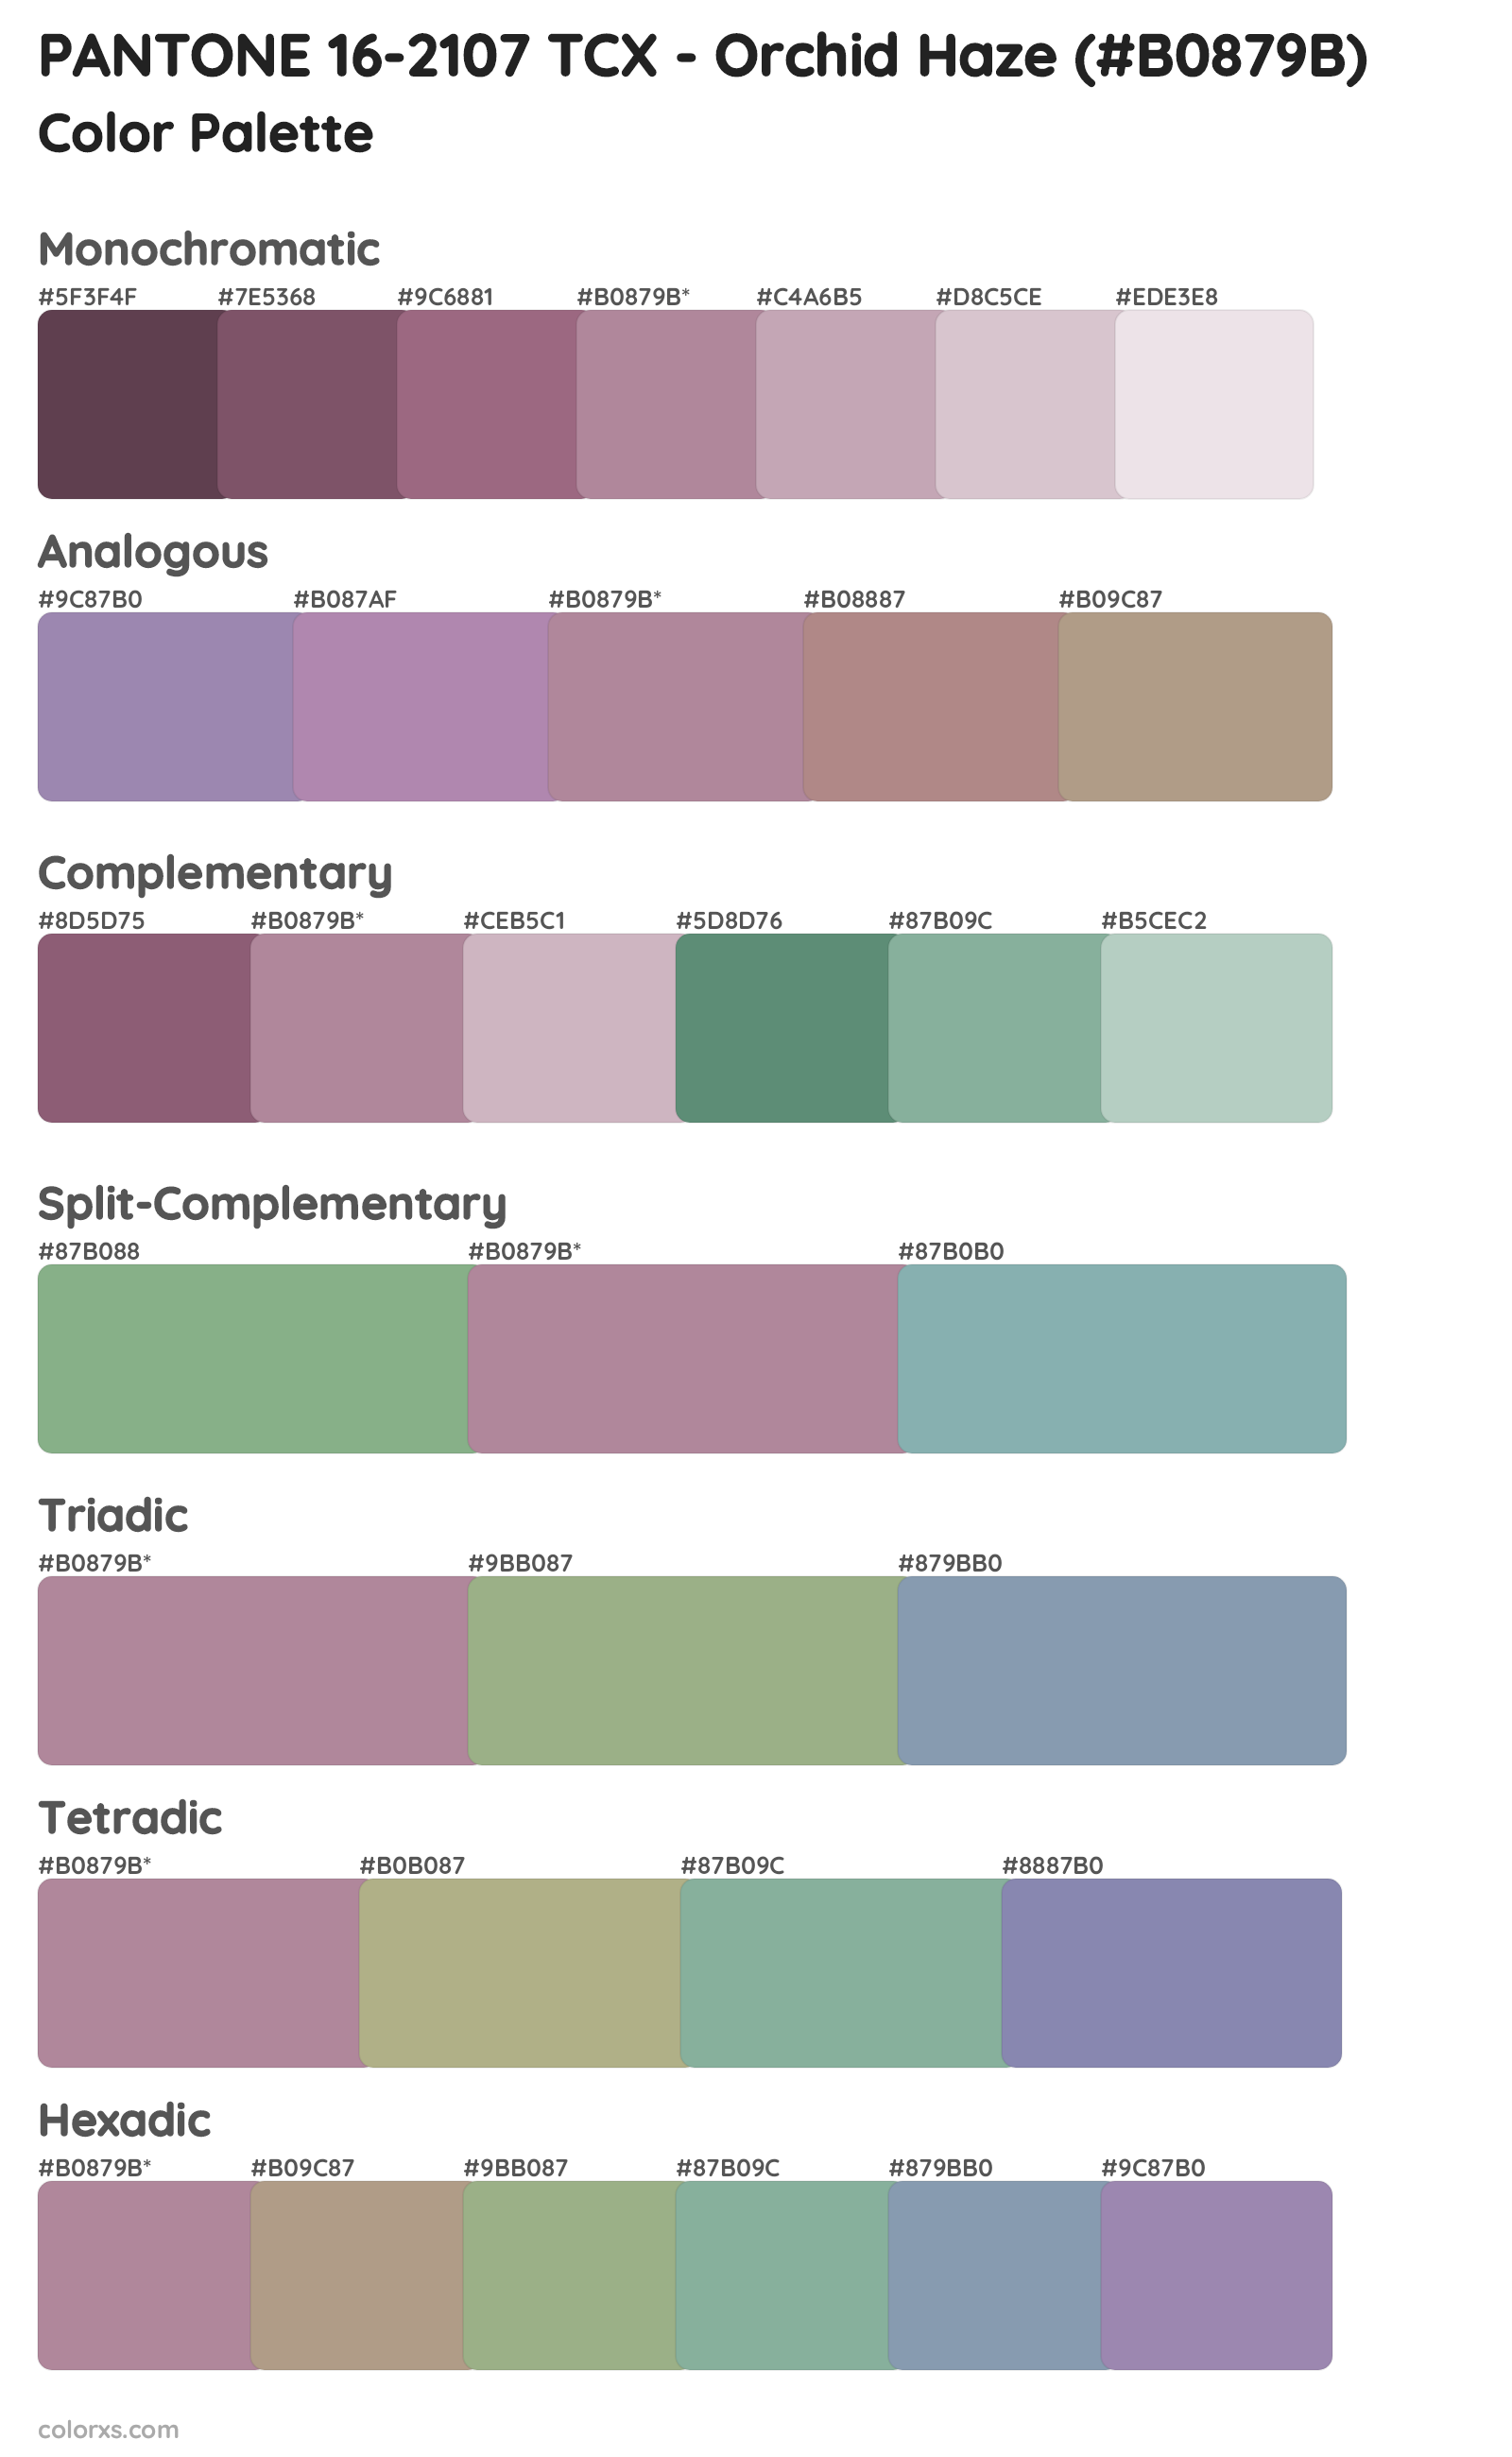 PANTONE 16-2107 TCX - Orchid Haze Color Scheme Palettes